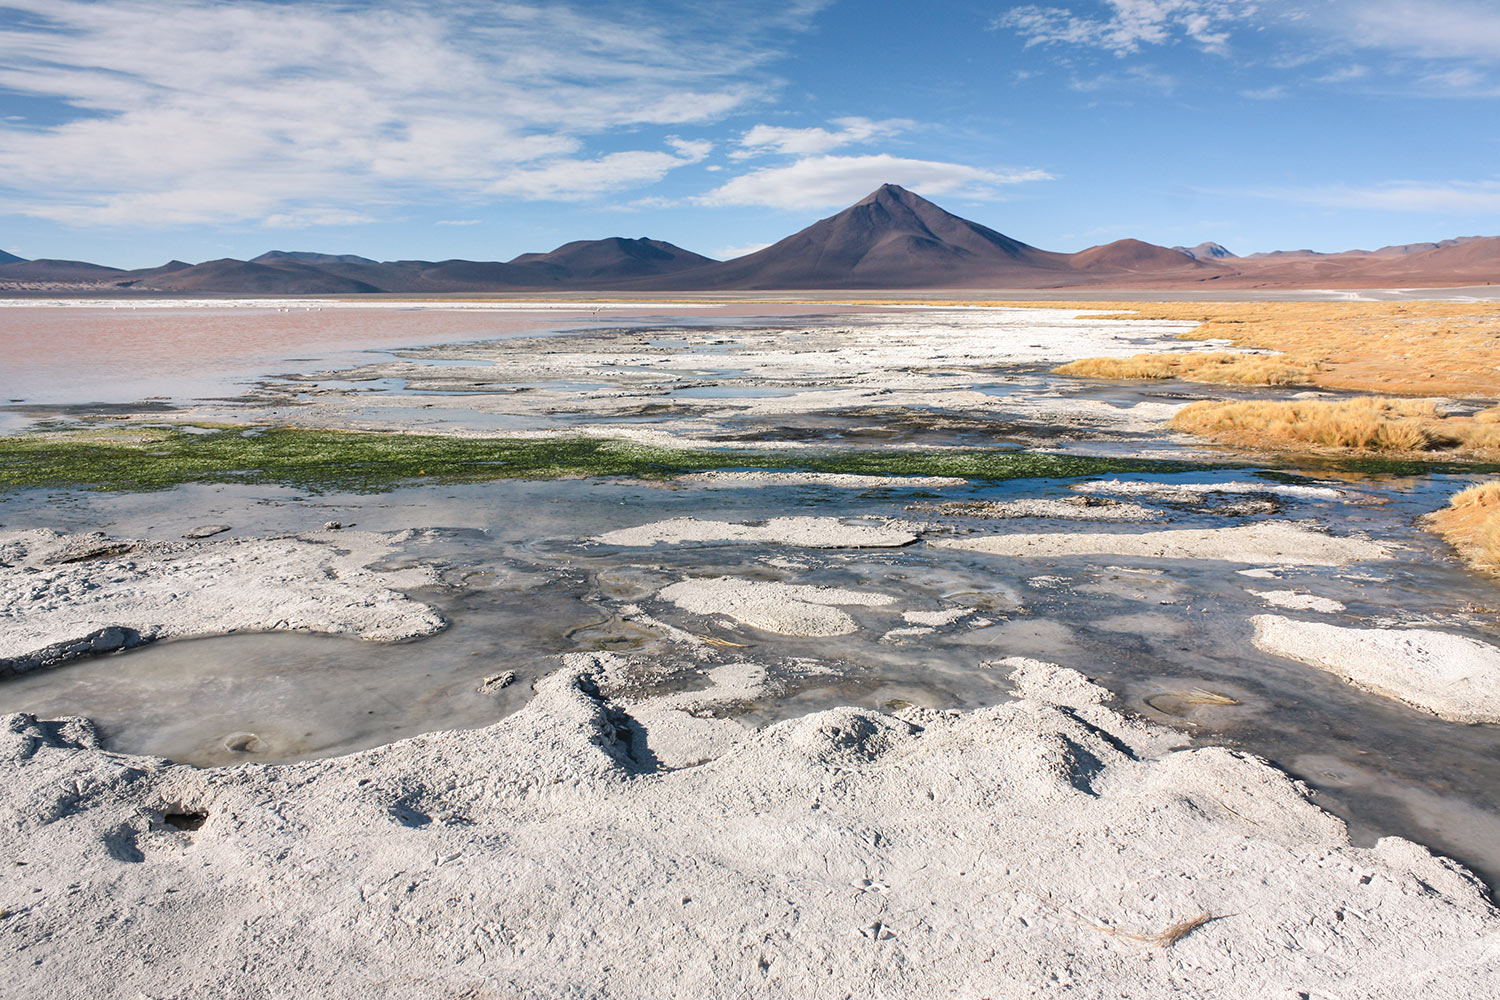 Altiplano, Chili / Altiplano, Chile